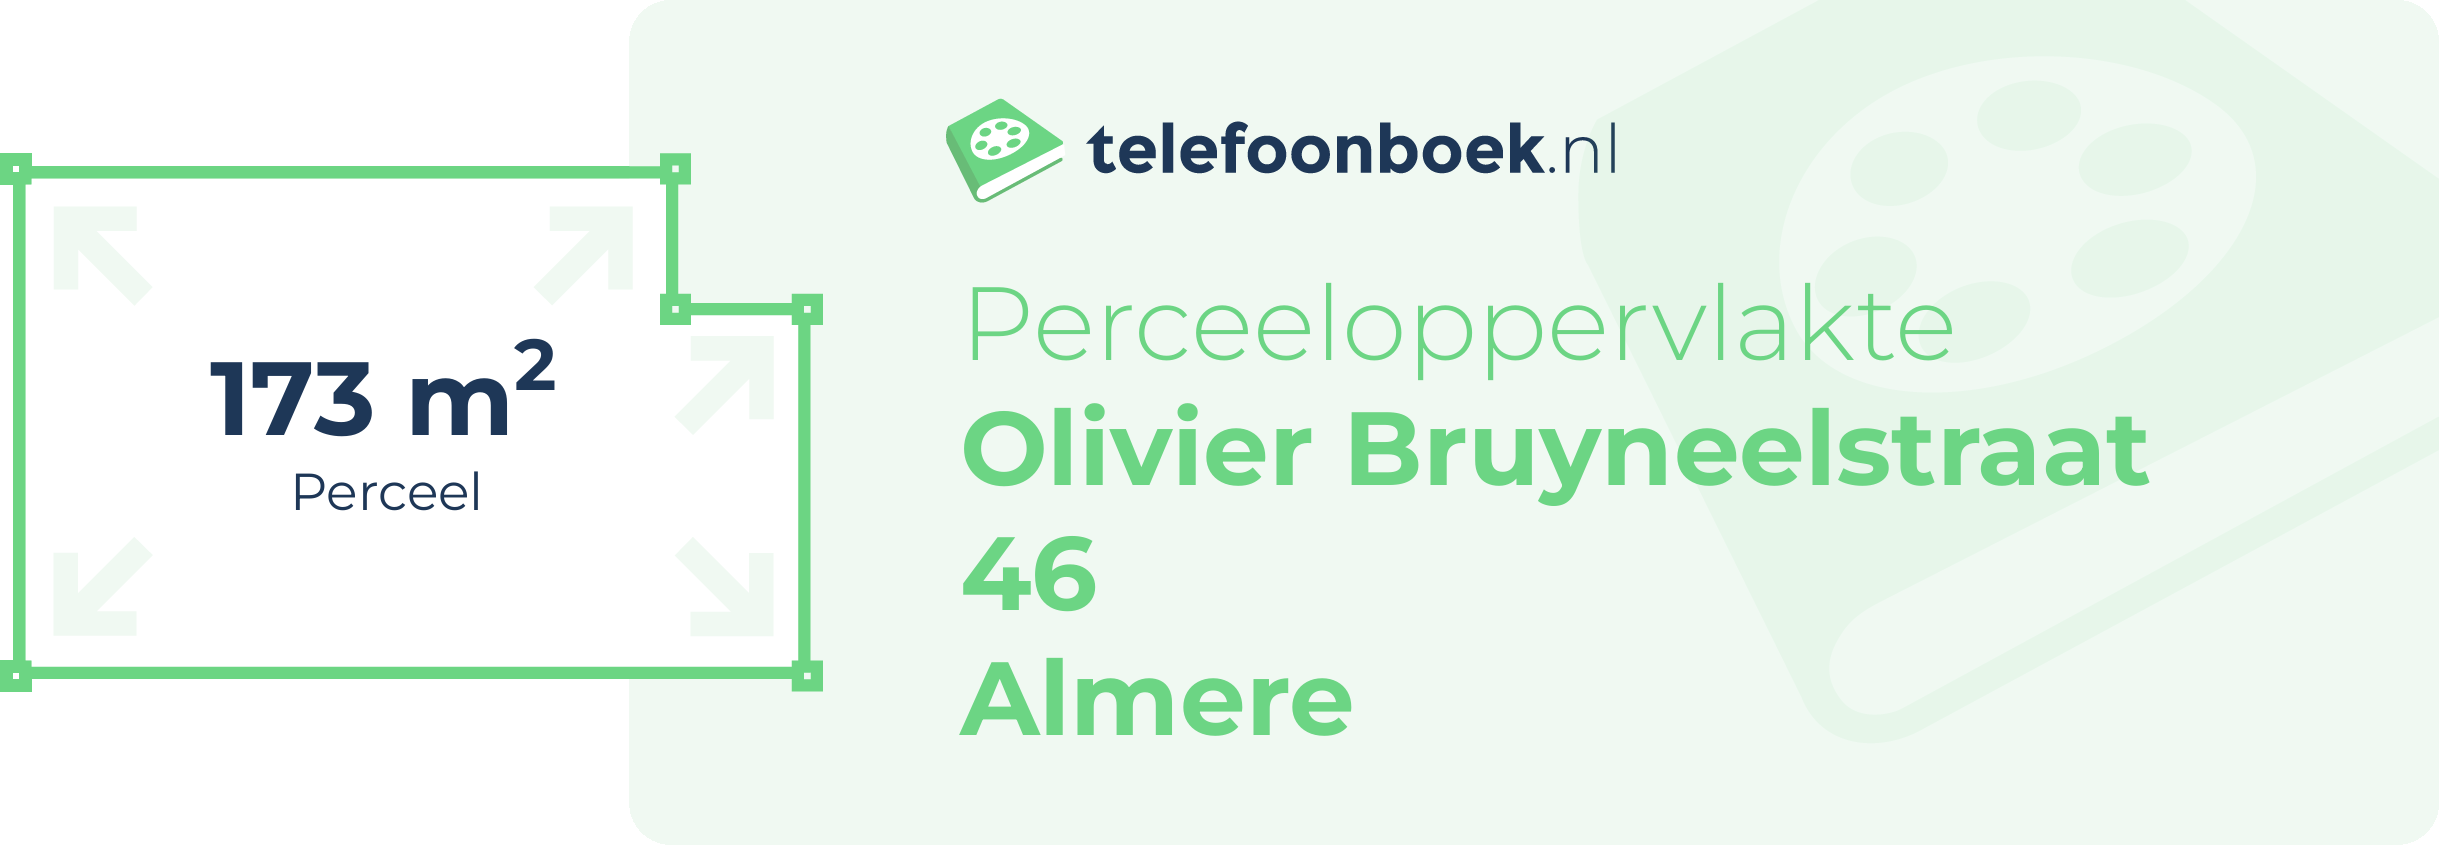 Perceeloppervlakte Olivier Bruyneelstraat 46 Almere